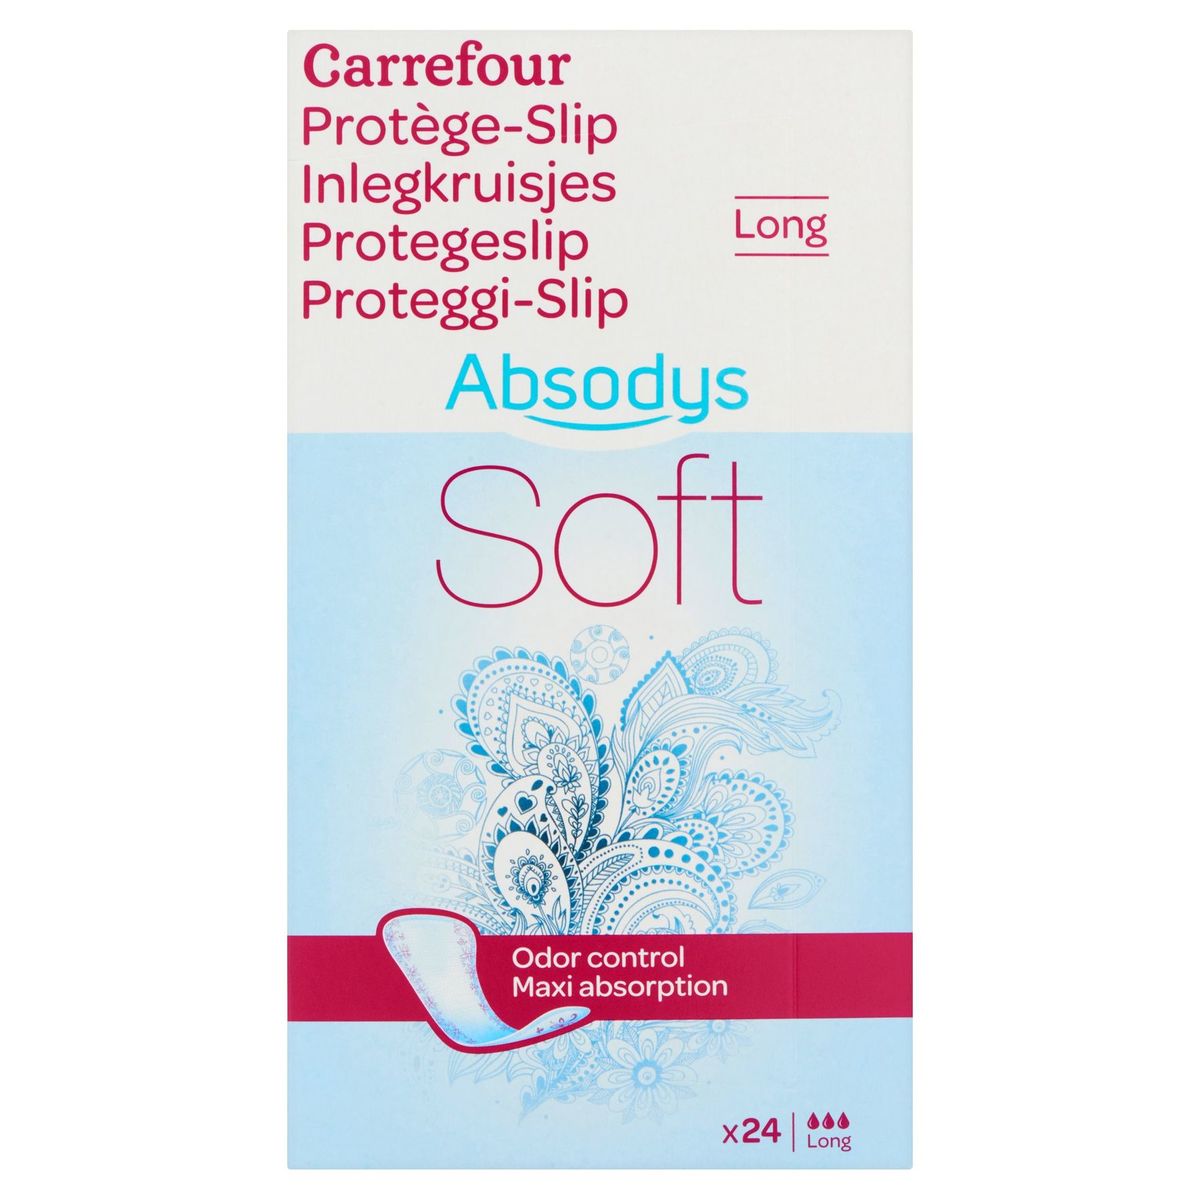 Carrefour Absodys Protège-Slip Long Soft 24 Pièces